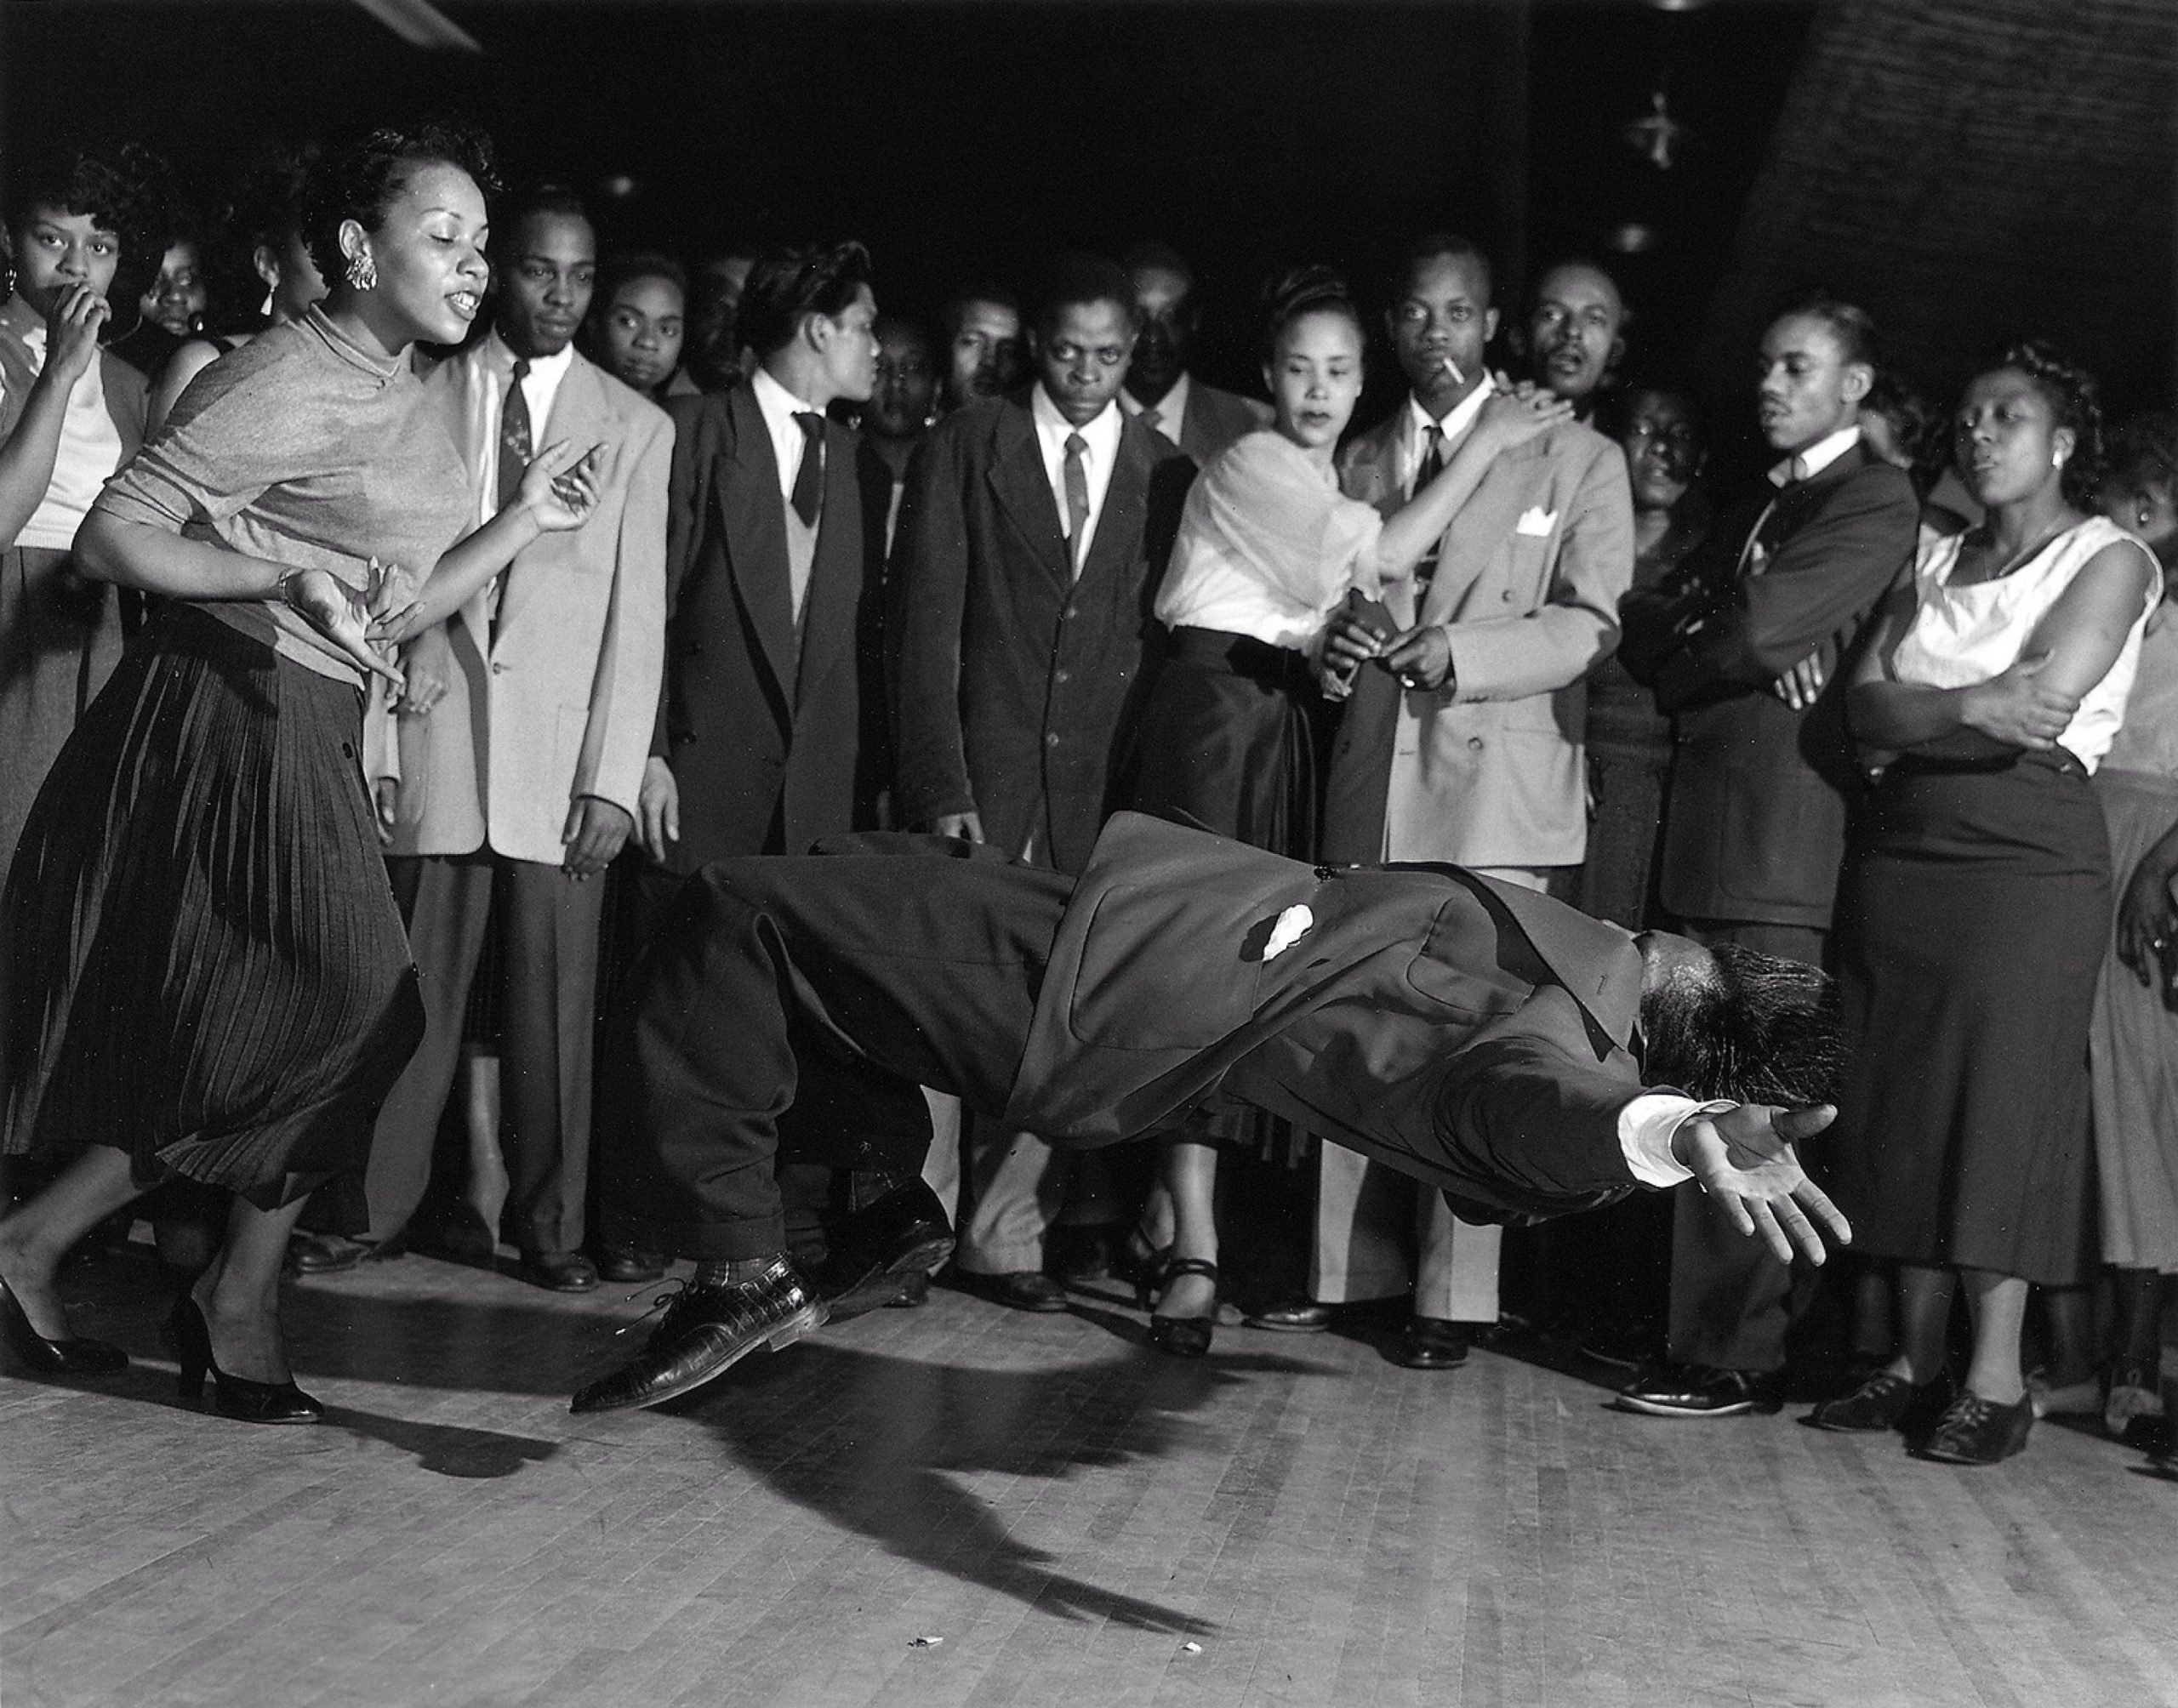 Eine schwarz-weiß Aufnahme von einem Dancebattle. Eine Menge steht staunend um einen tanzenden Mann.